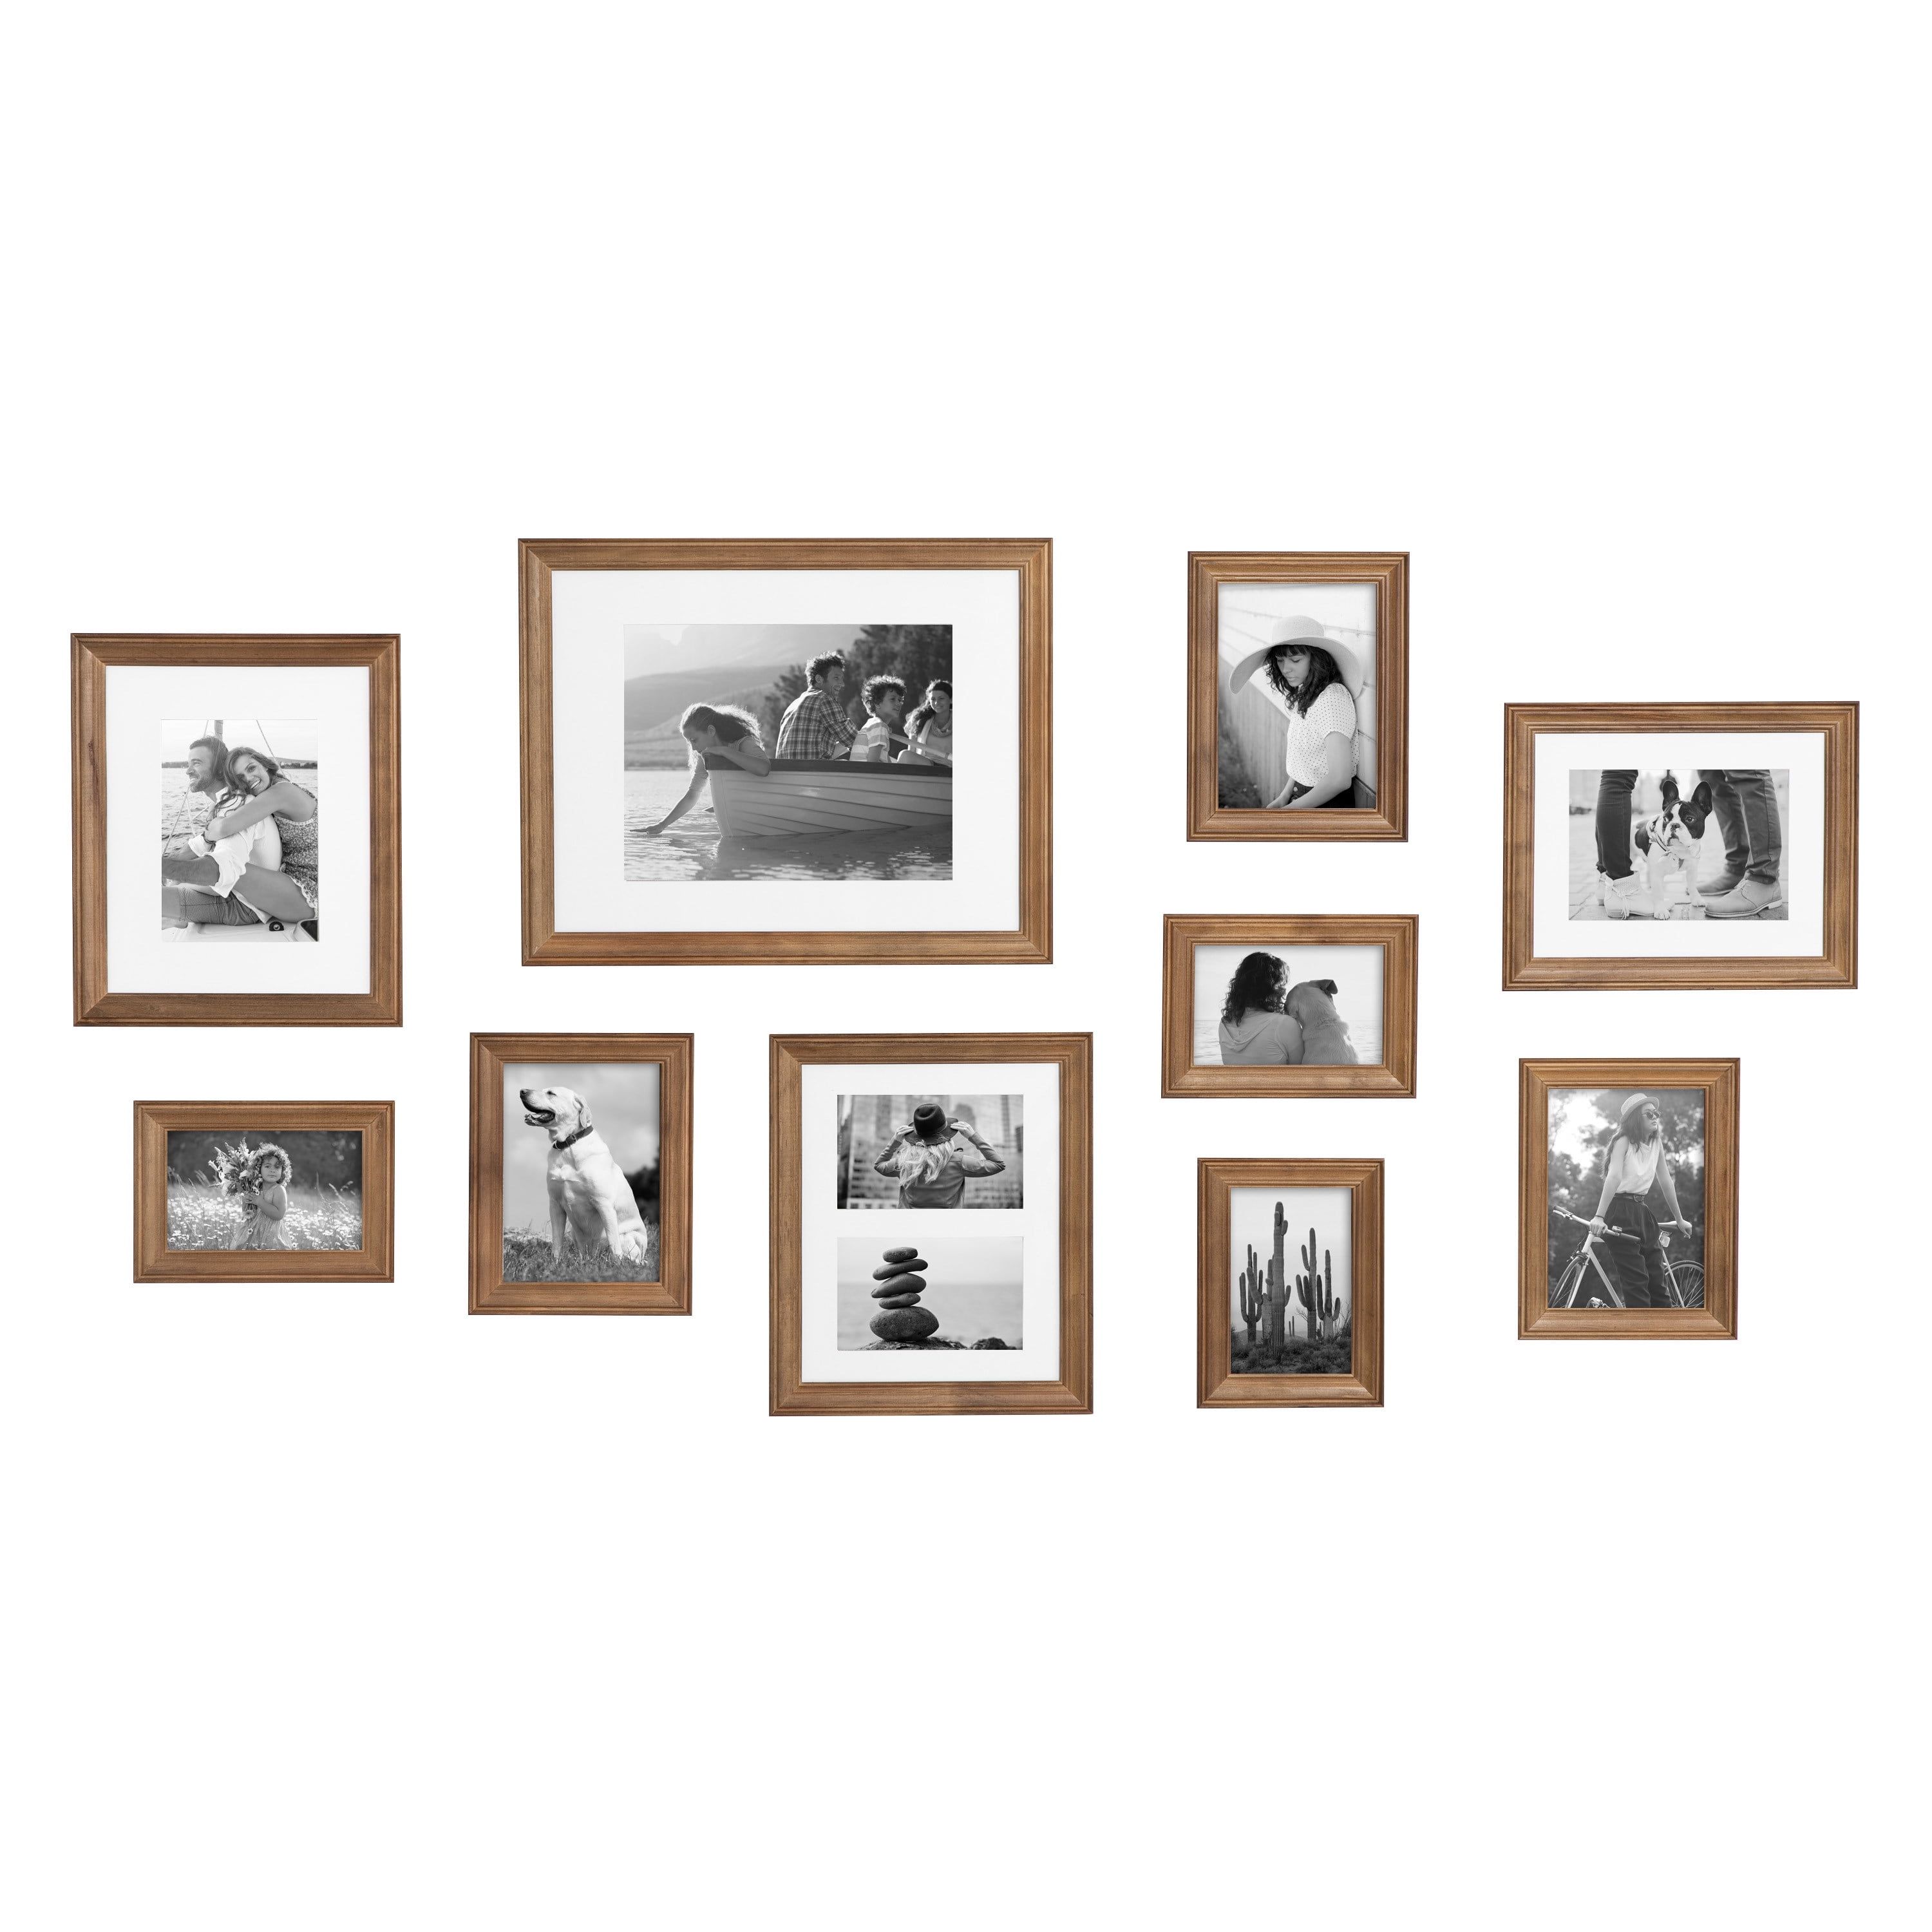 Four Frames Mockup, Four Vertical Frame, Set of Four Frame, 4